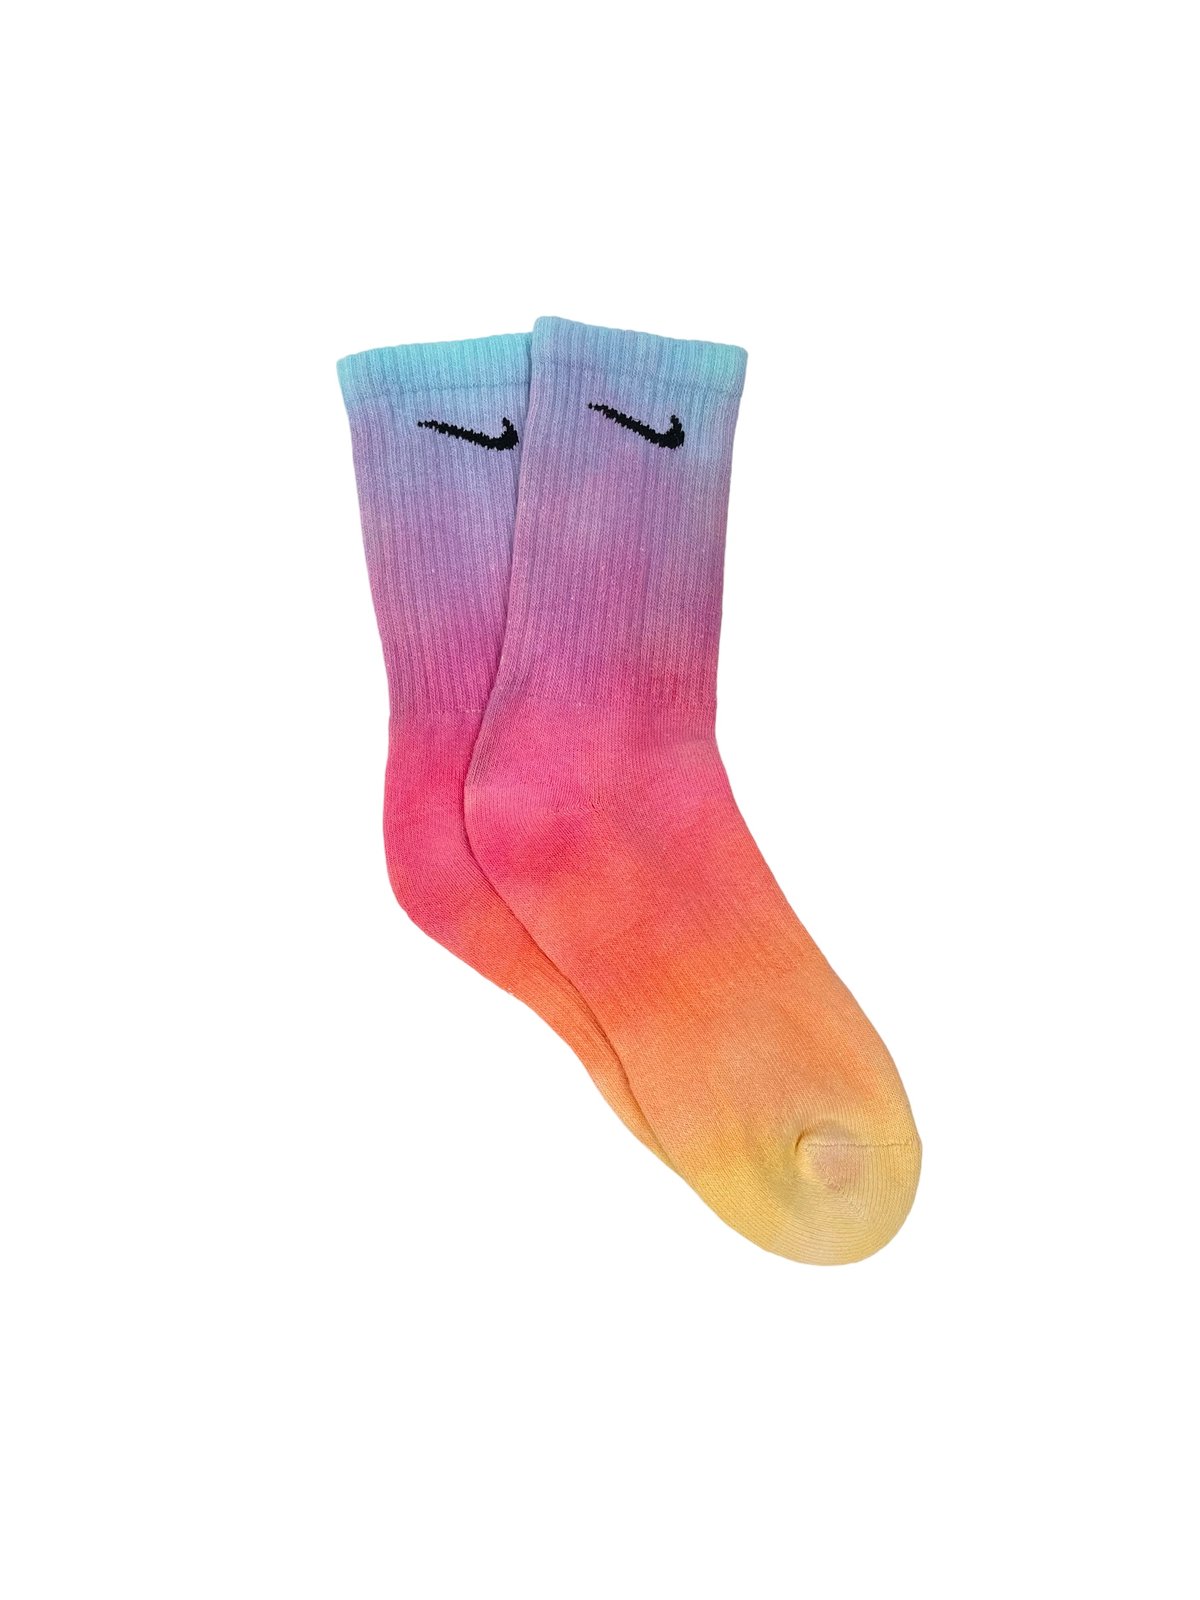 Image of Nike Socks Dyed Sunset Reverse